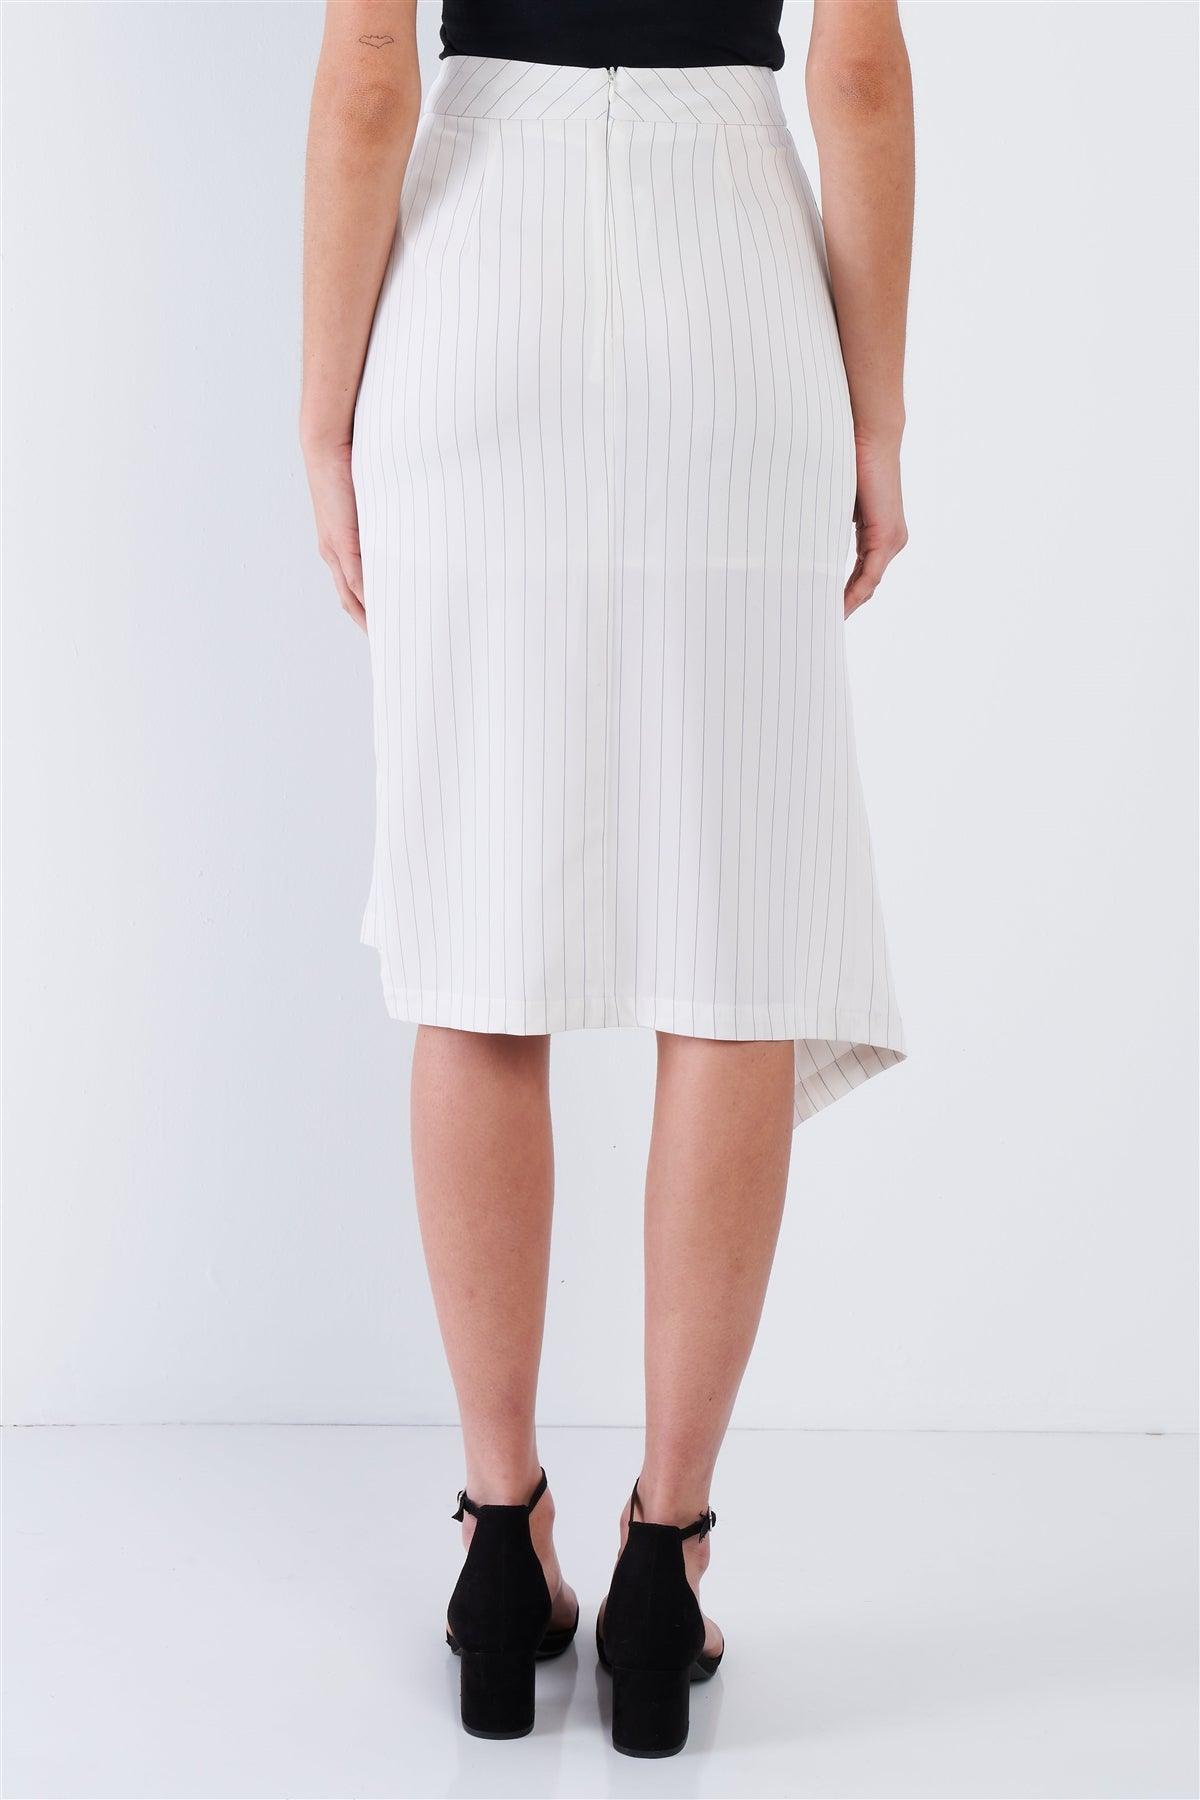 Off-White Pinstripe Cut Out Asymmetrical Hem Bodycon Midi Skirt   /3-2-1